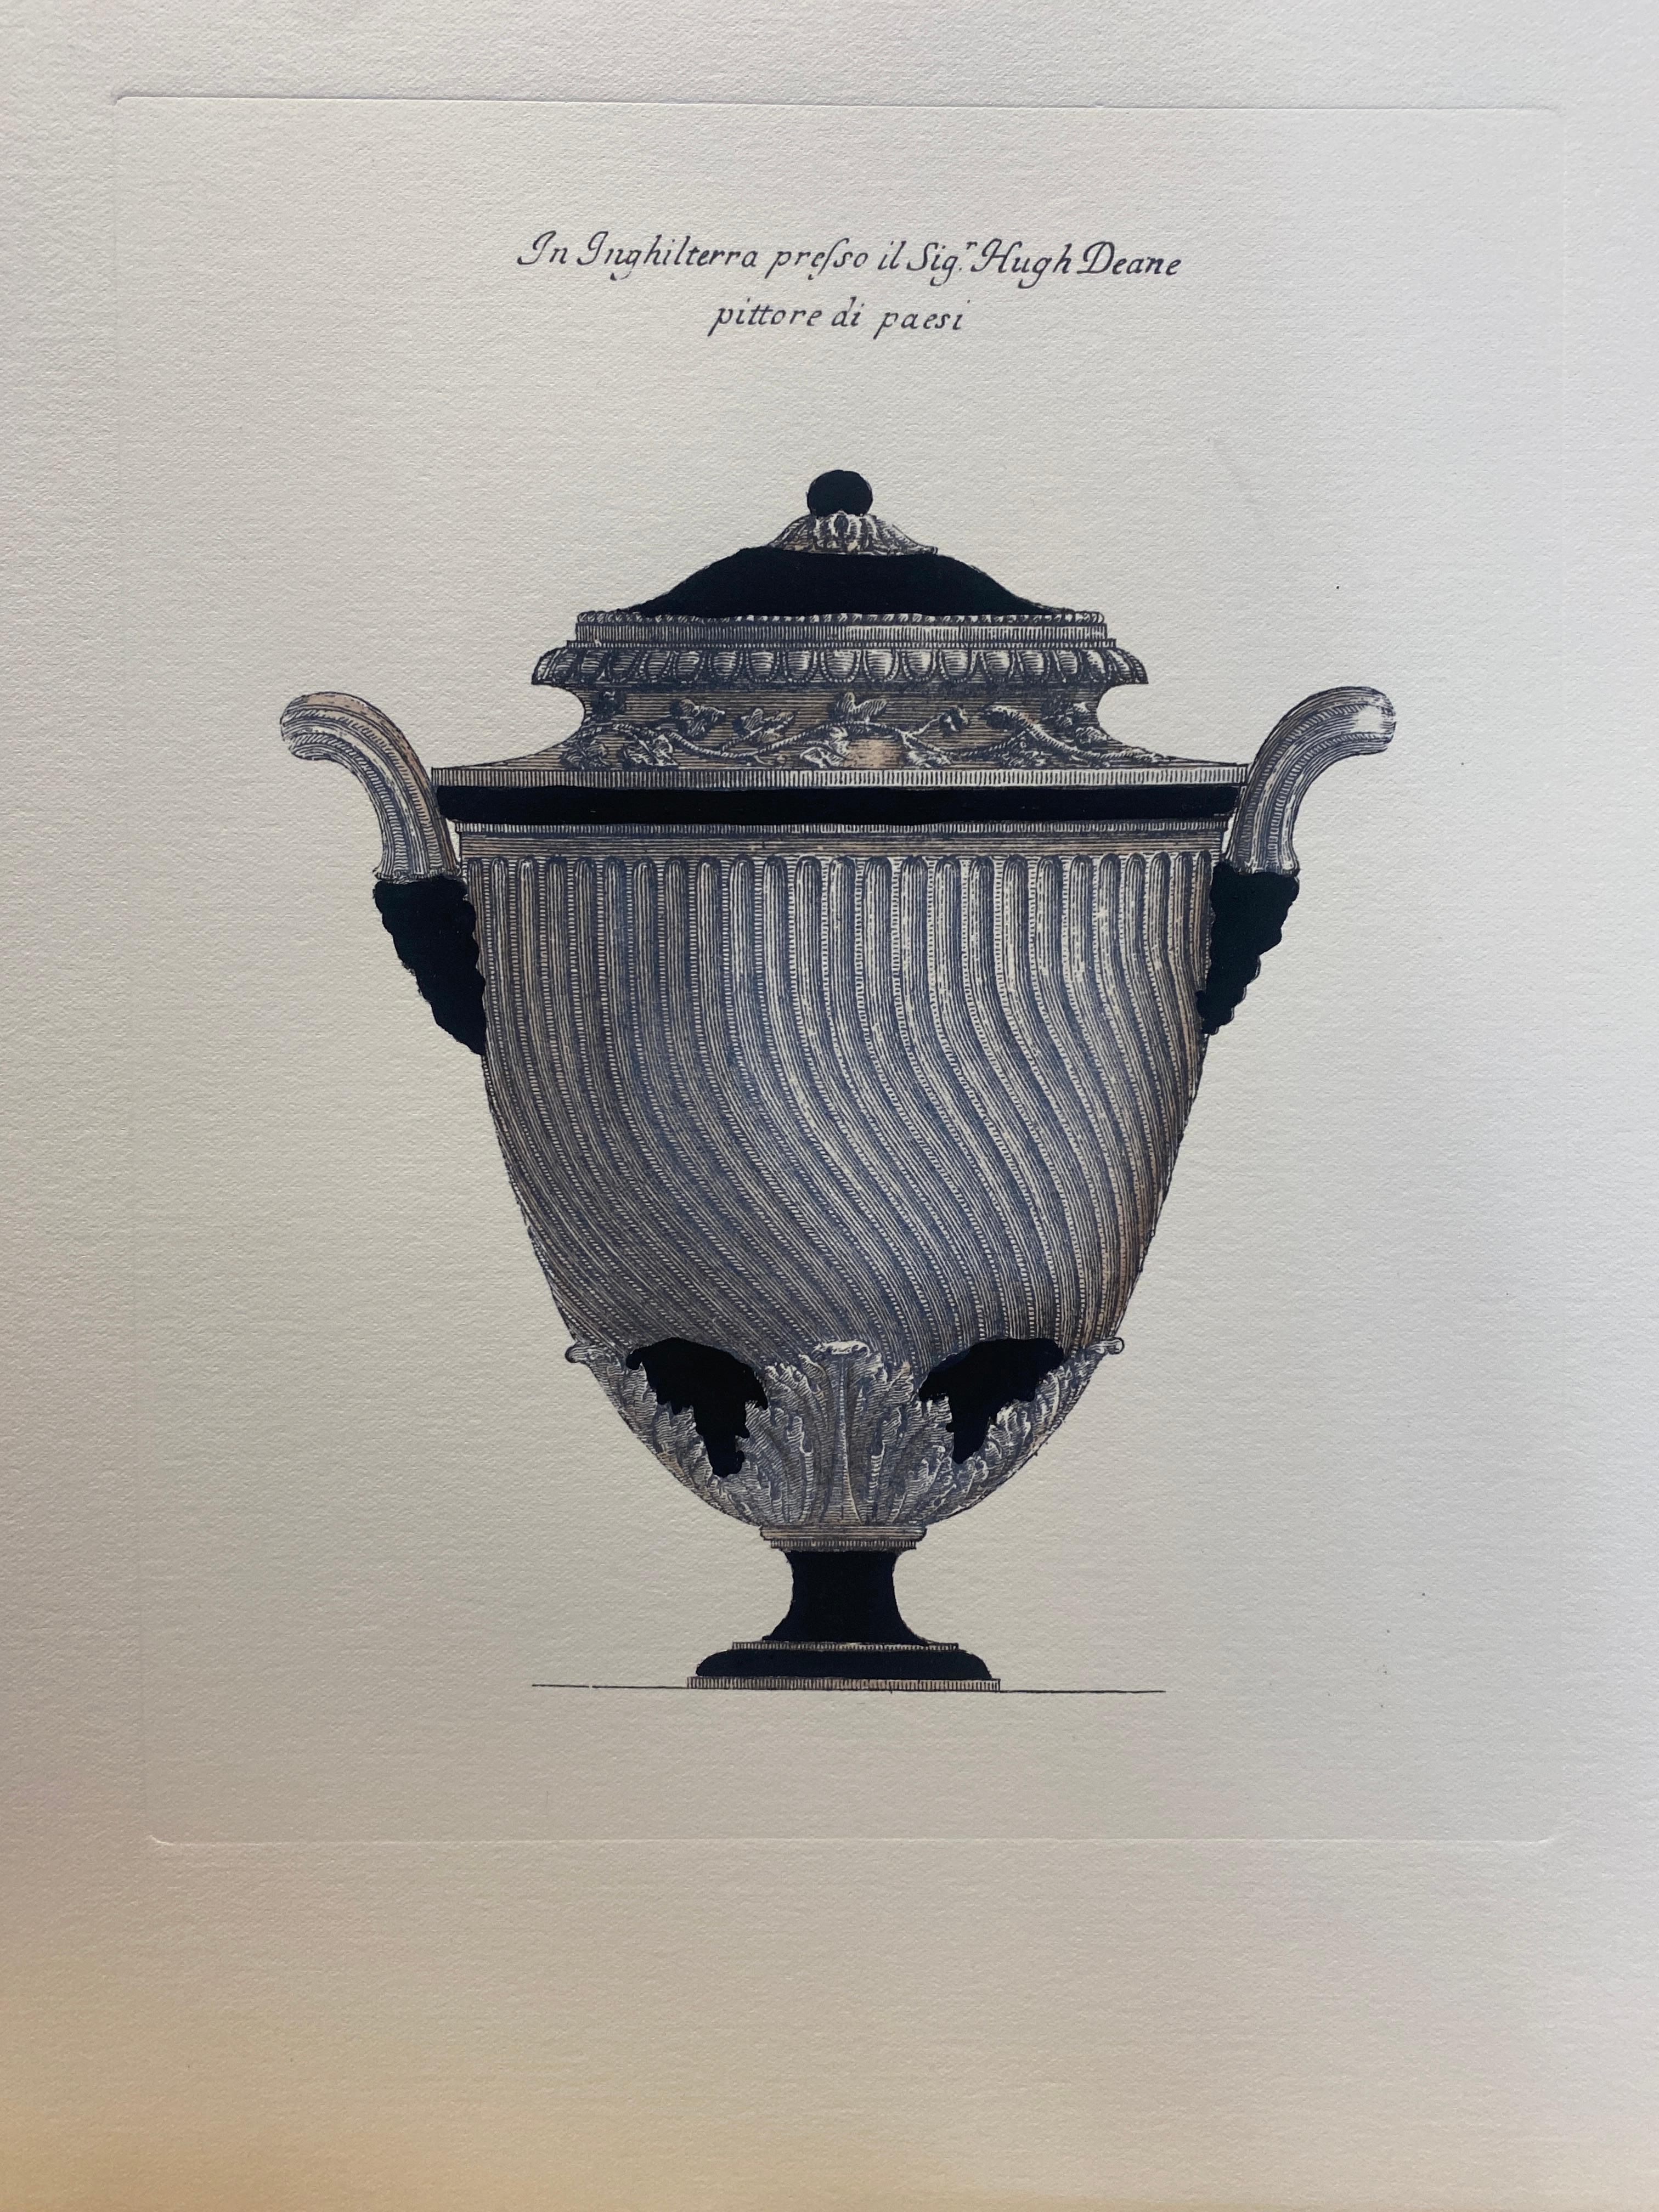 Sehr originelle Reproduktionen von dekorativen Vasen aus bedeutenden englischen Herrenhäusern, gedruckt auf einer Handpresse auf Gravurpapier aus 100% Baumwolle.
Vollständig handbemalt mit cremefarbener Farbe, umberfarbenen Highlights und